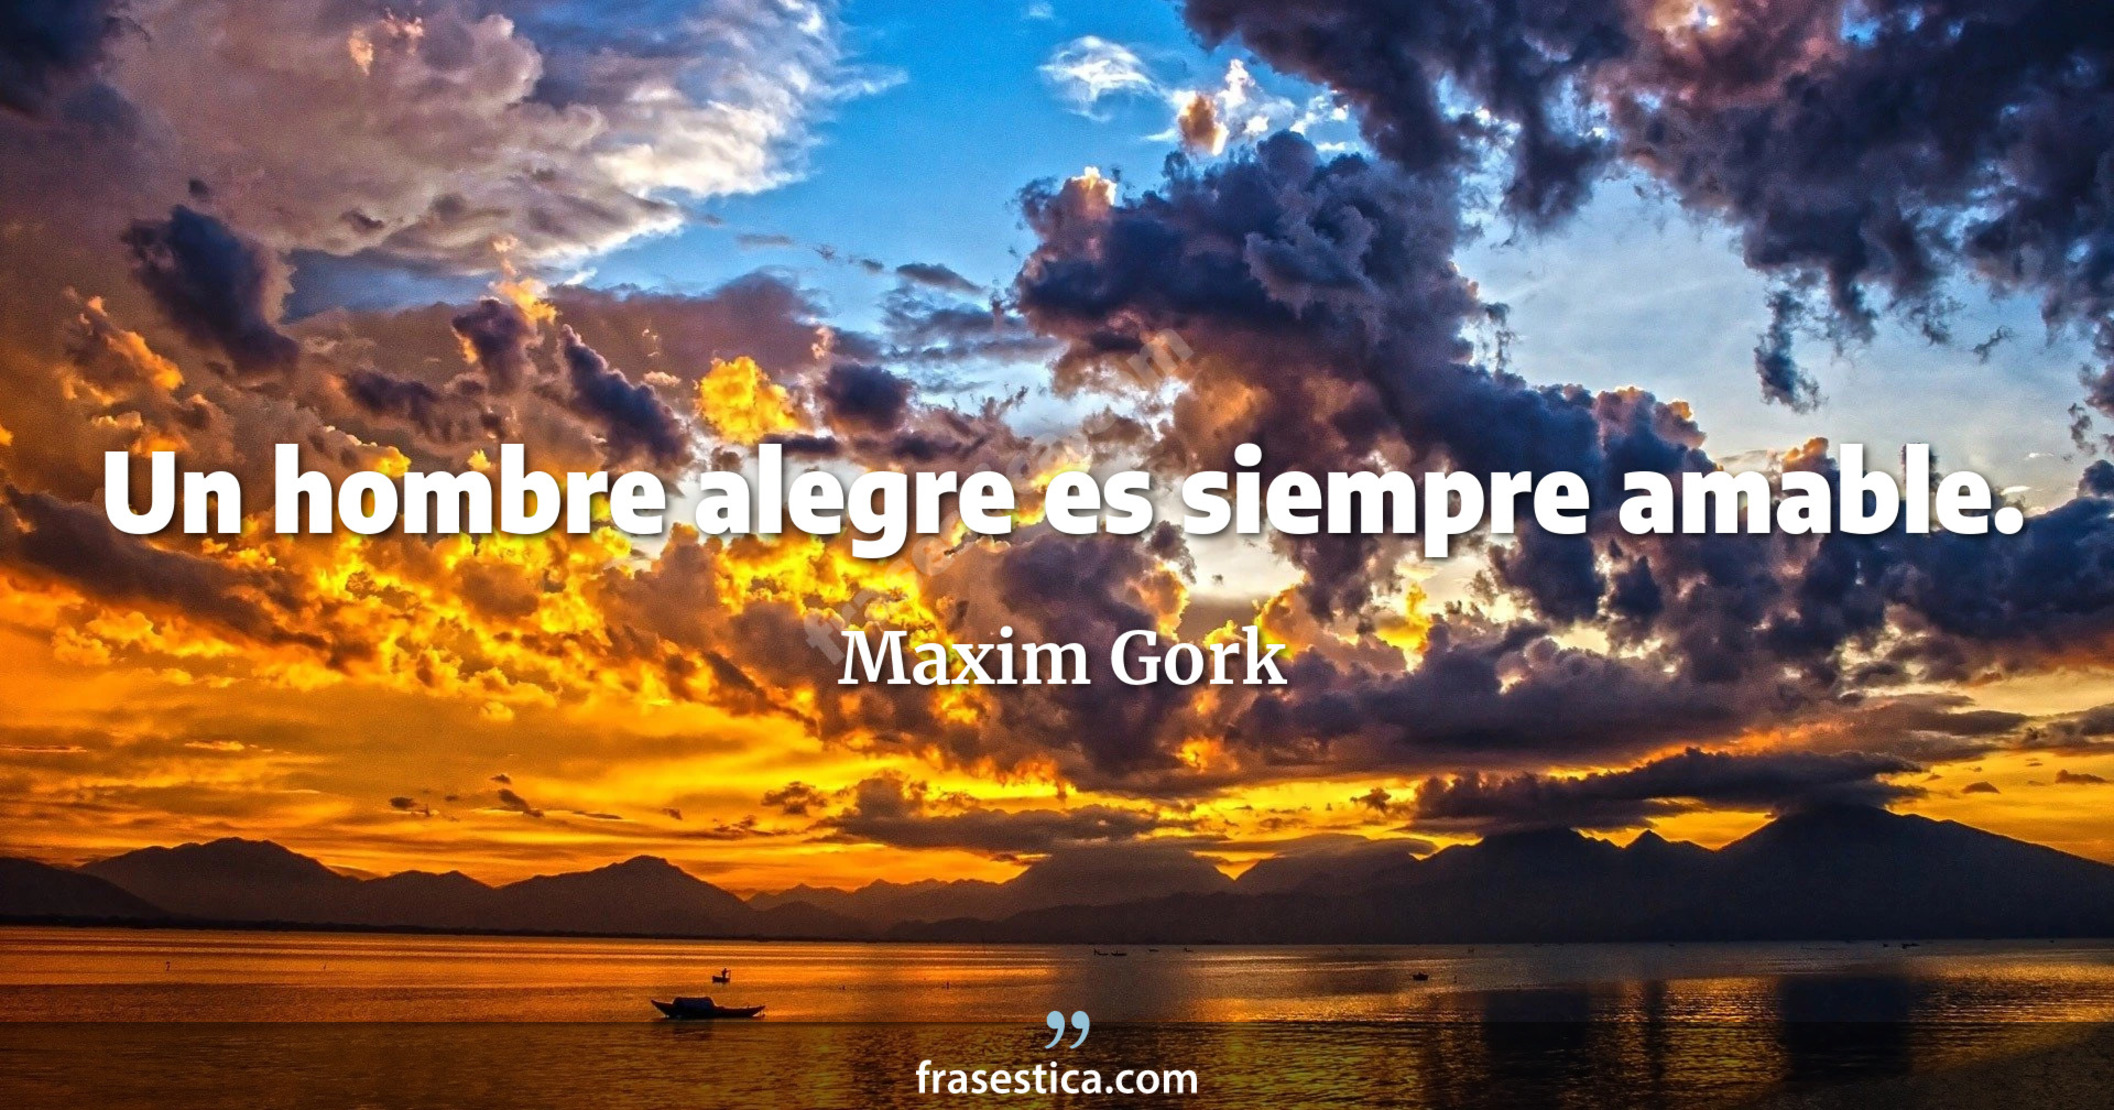 Un hombre alegre es siempre amable. - Maxim Gork